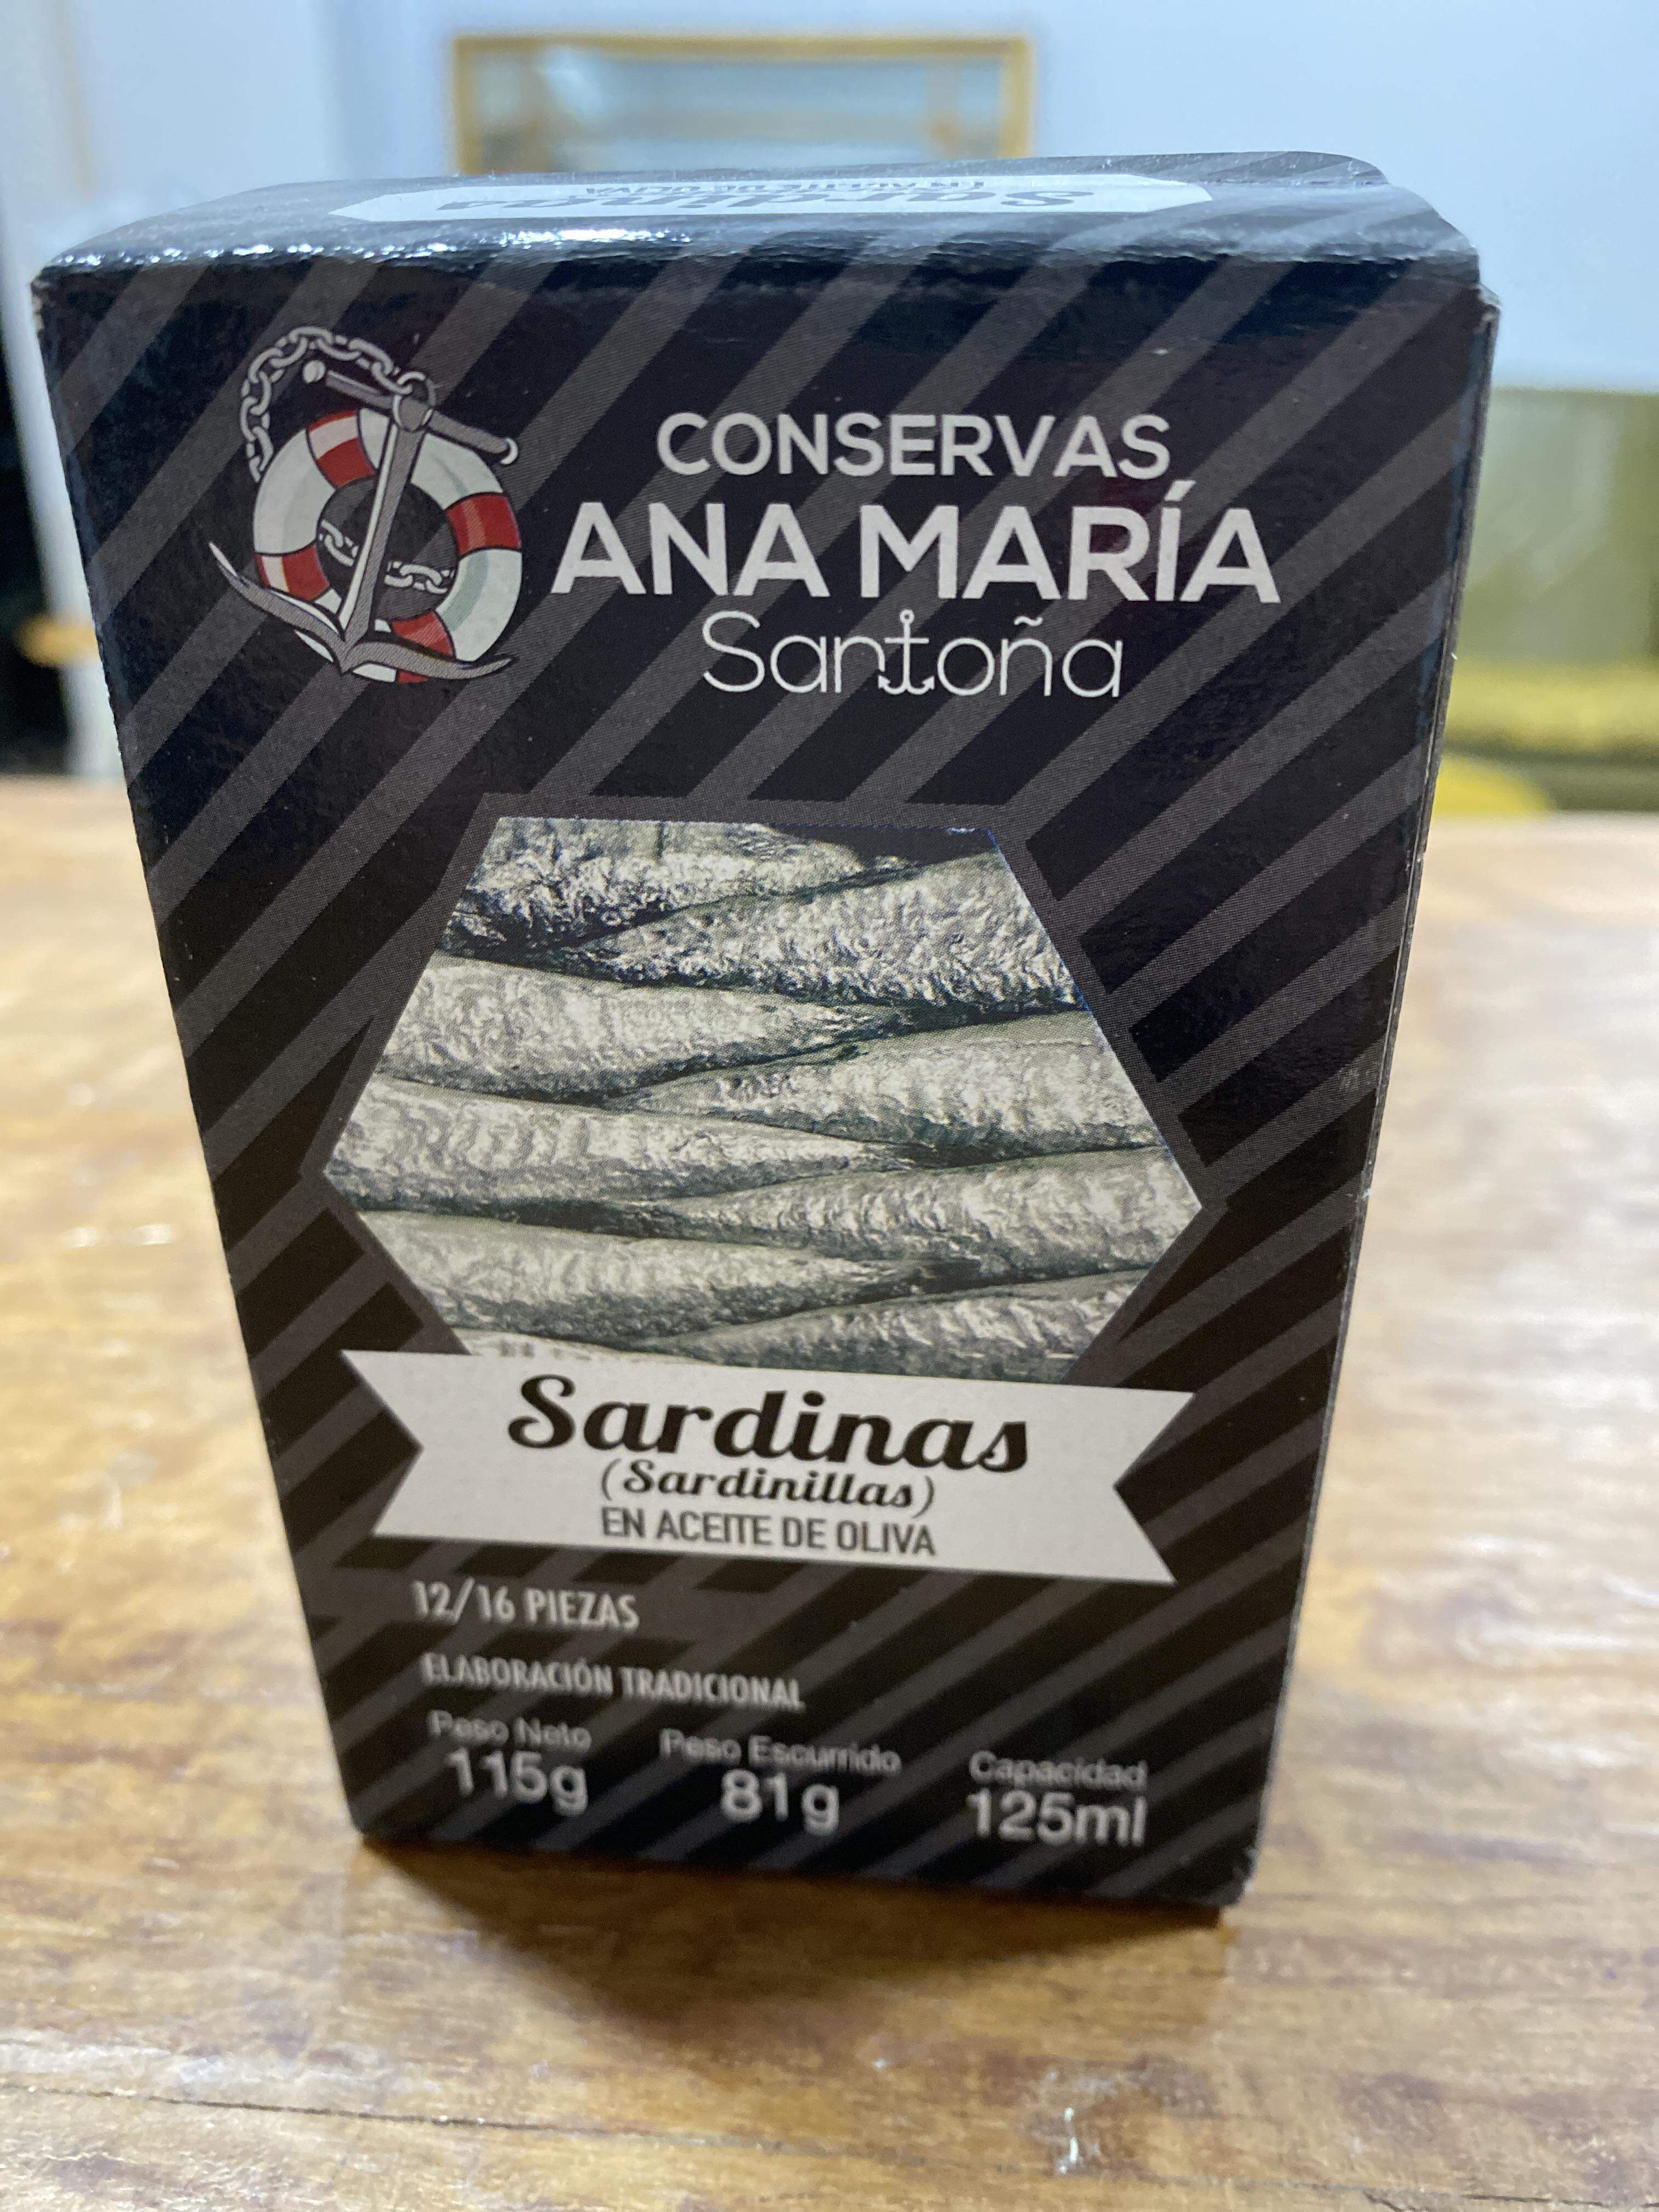 Sardinas Ana María Santoña